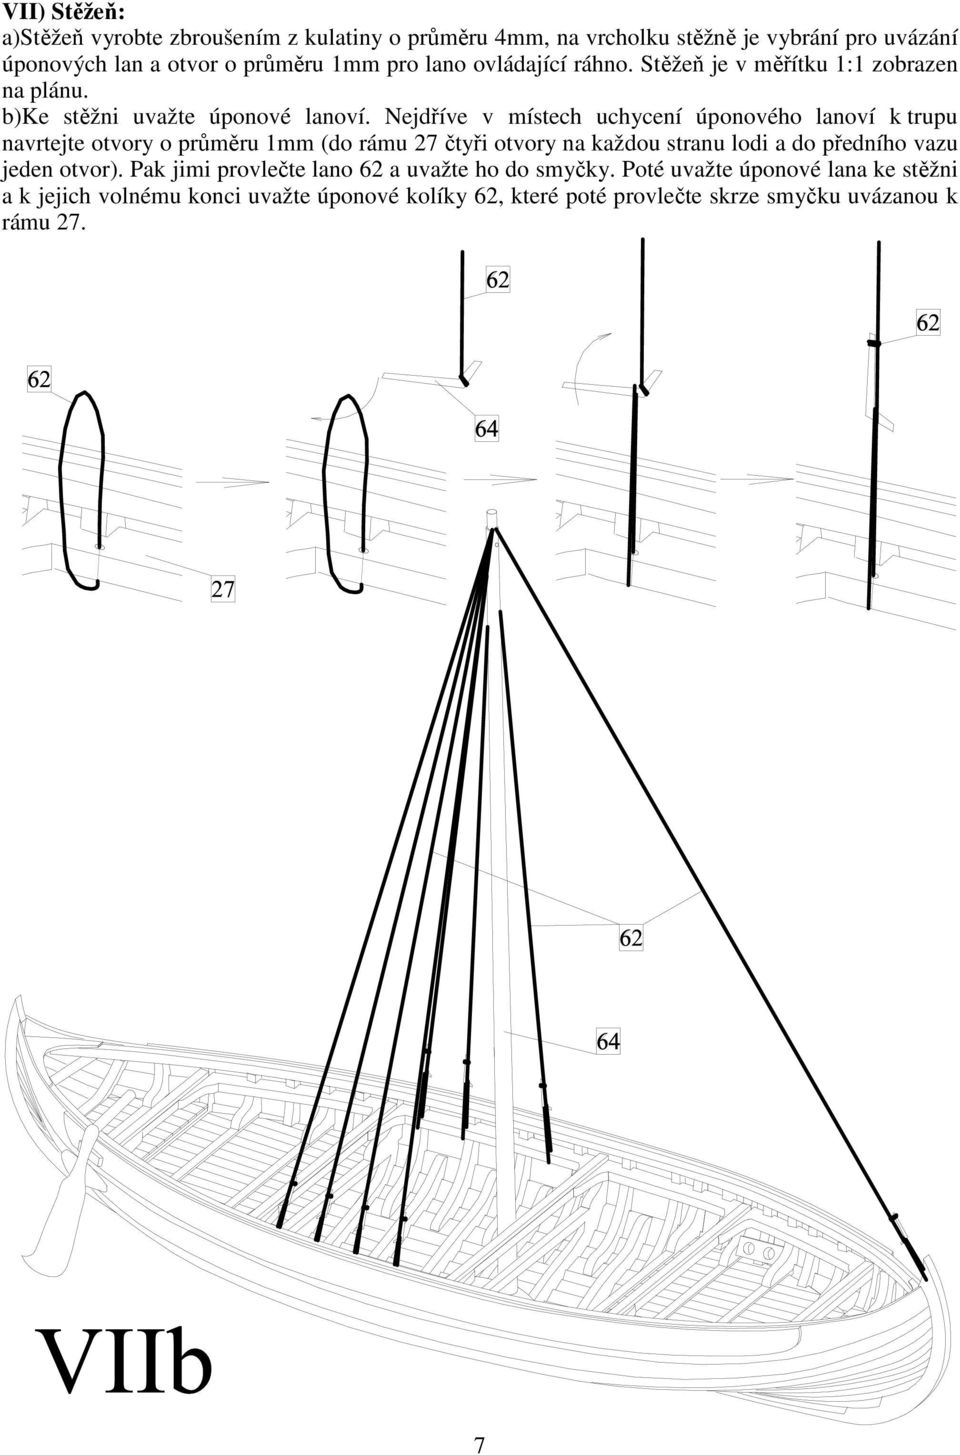 Nejdříve v místech uchycení úponového lanoví k trupu navrtejte otvory o průměru 1mm (do rámu 27 čtyři otvory na každou stranu lodi a do předního vazu